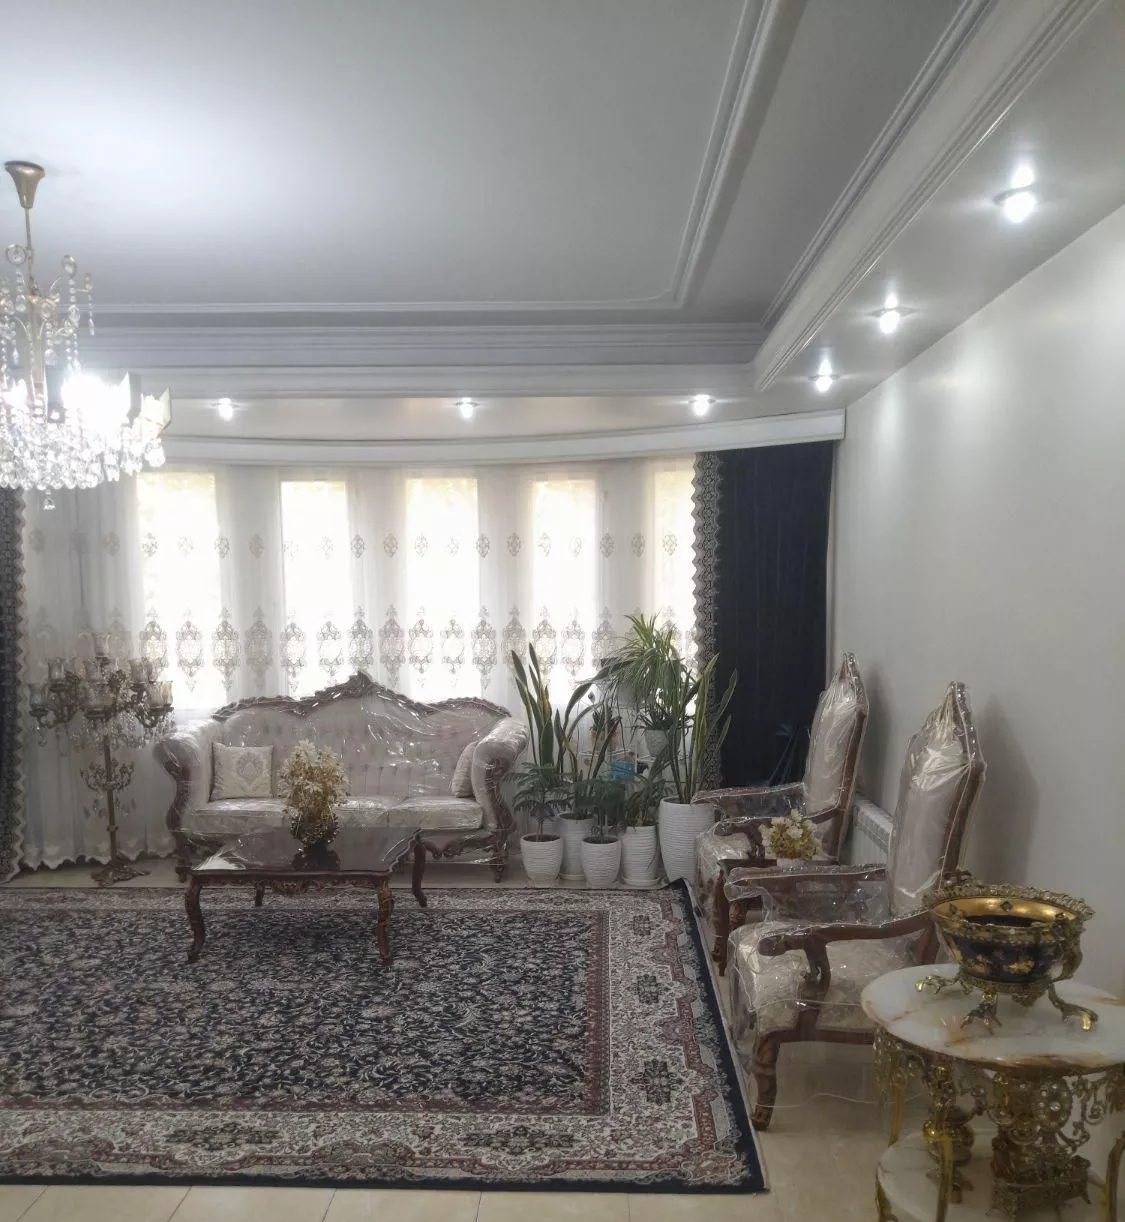 فروش آپارتمان ۱۱۲ متری اول بلوار ارم مهرشهر